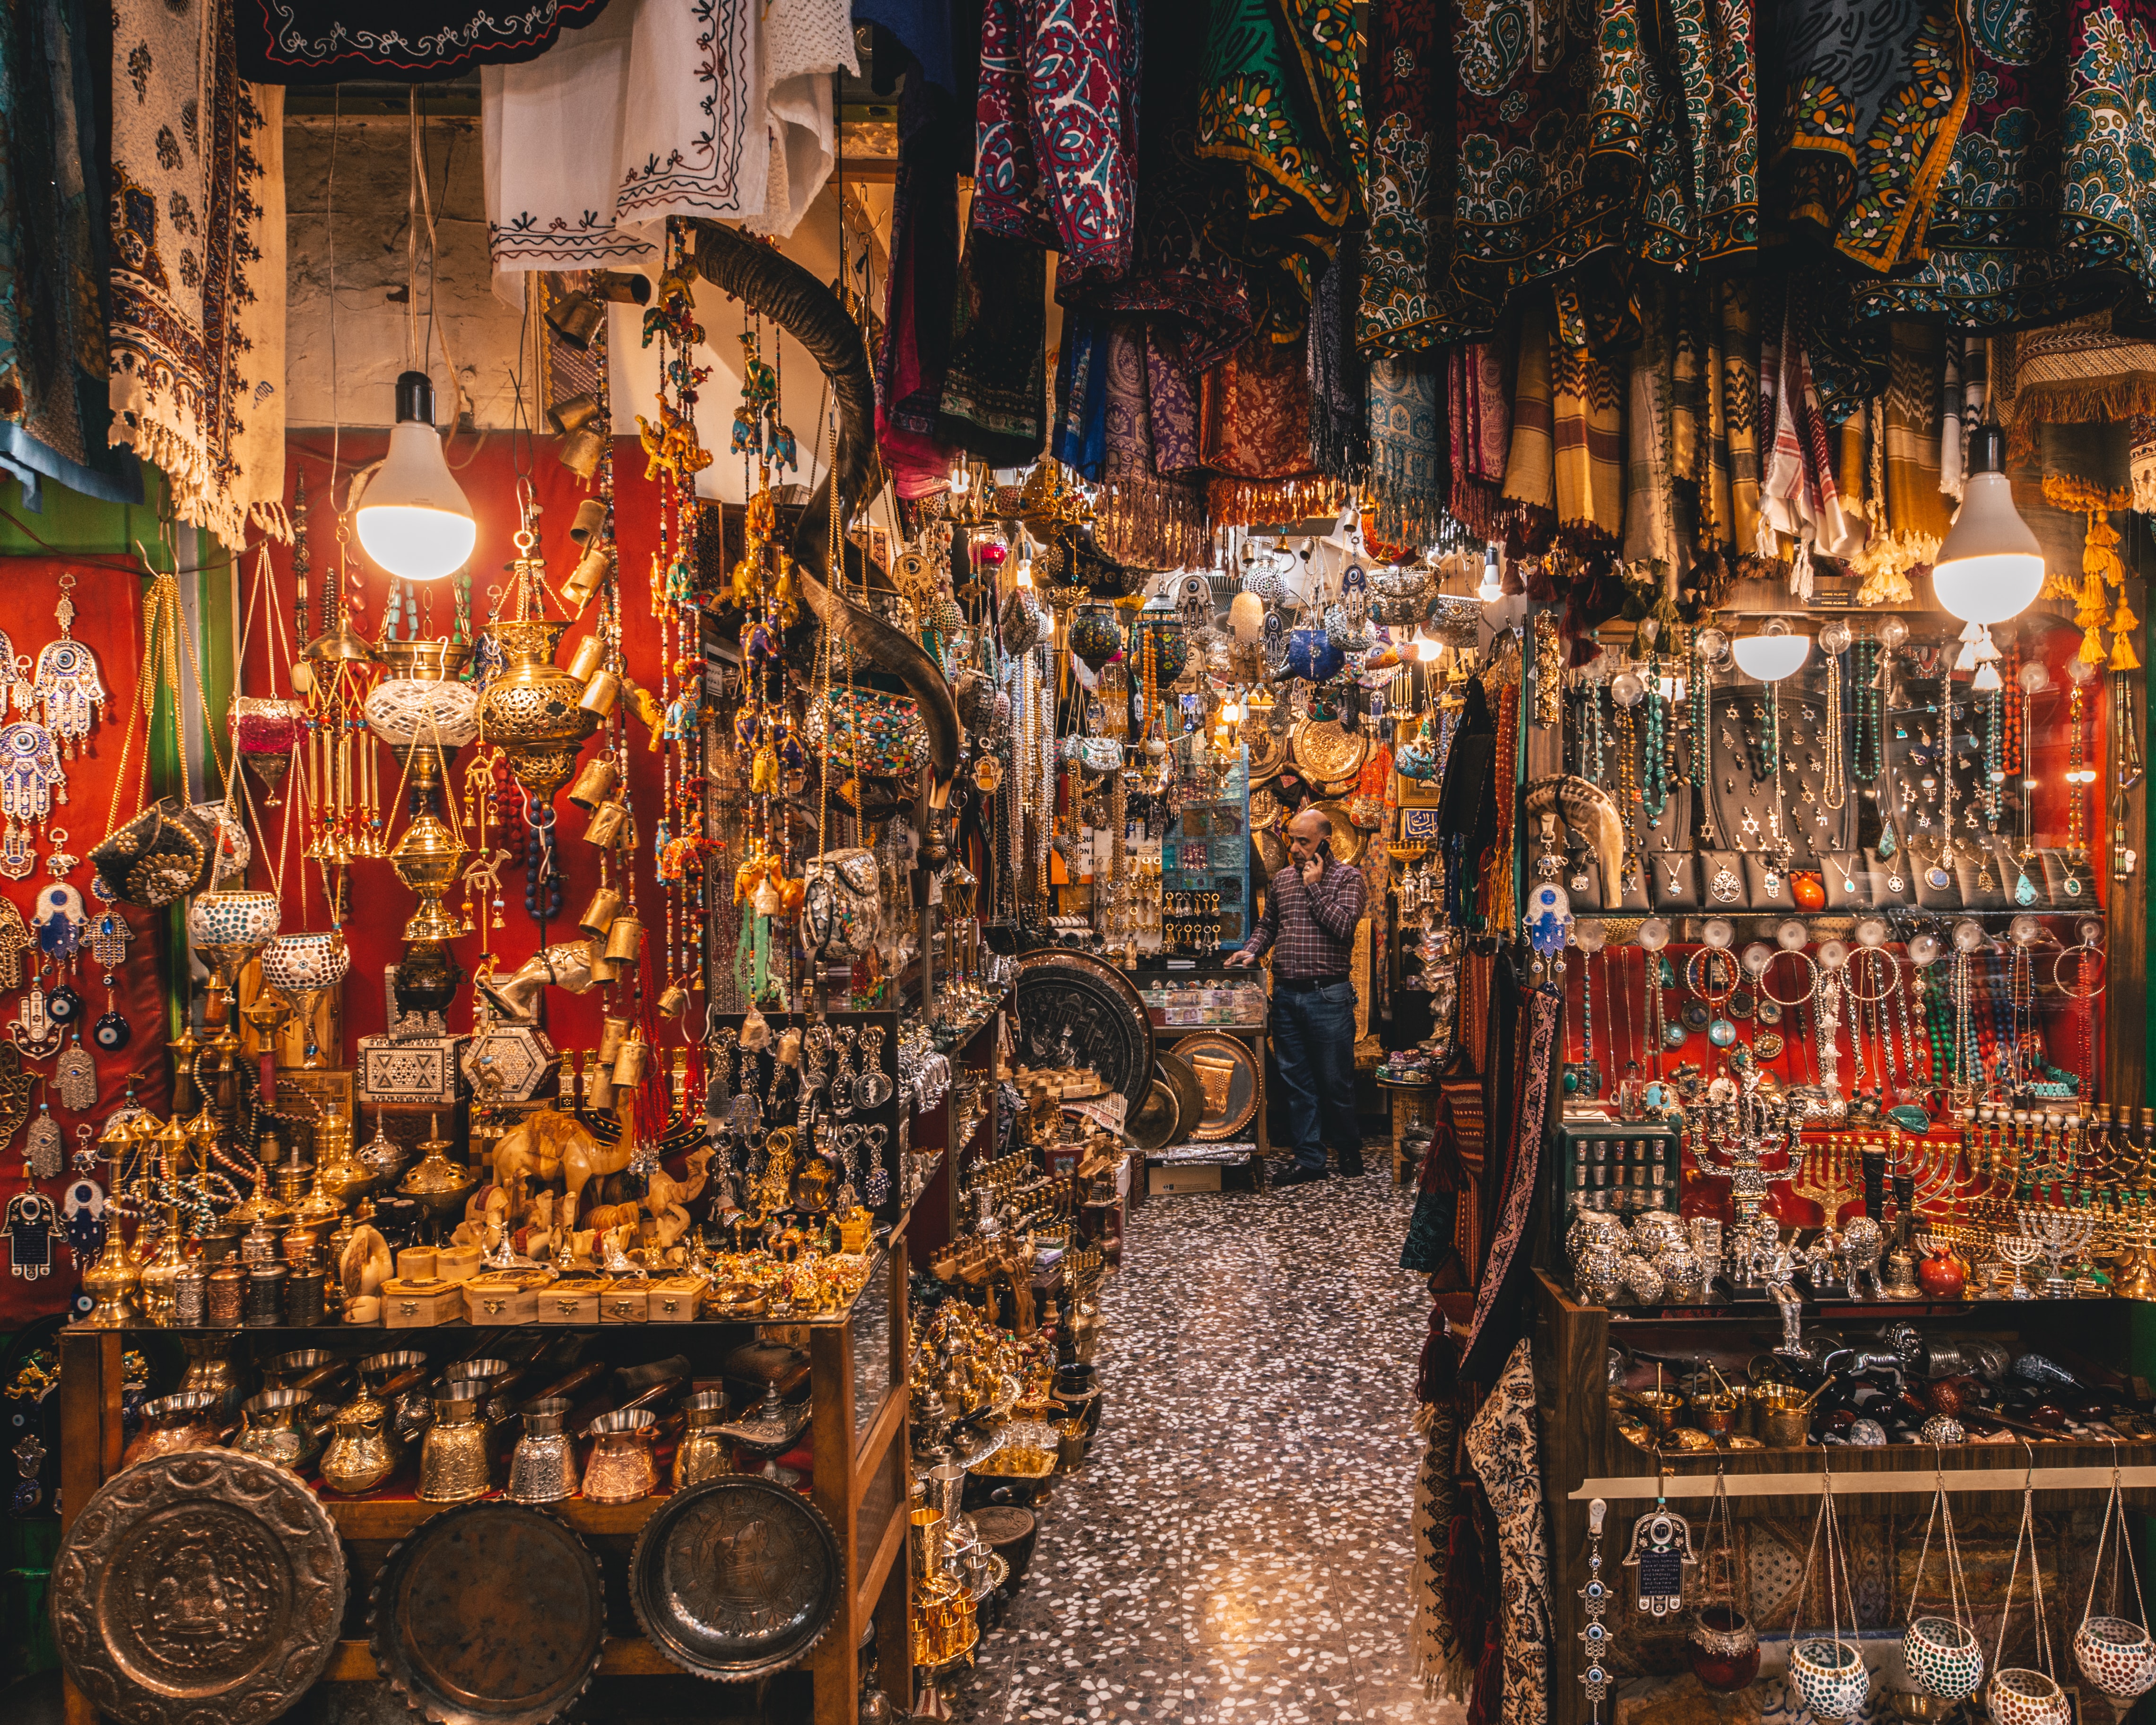 A shop in Jerusalem Old City